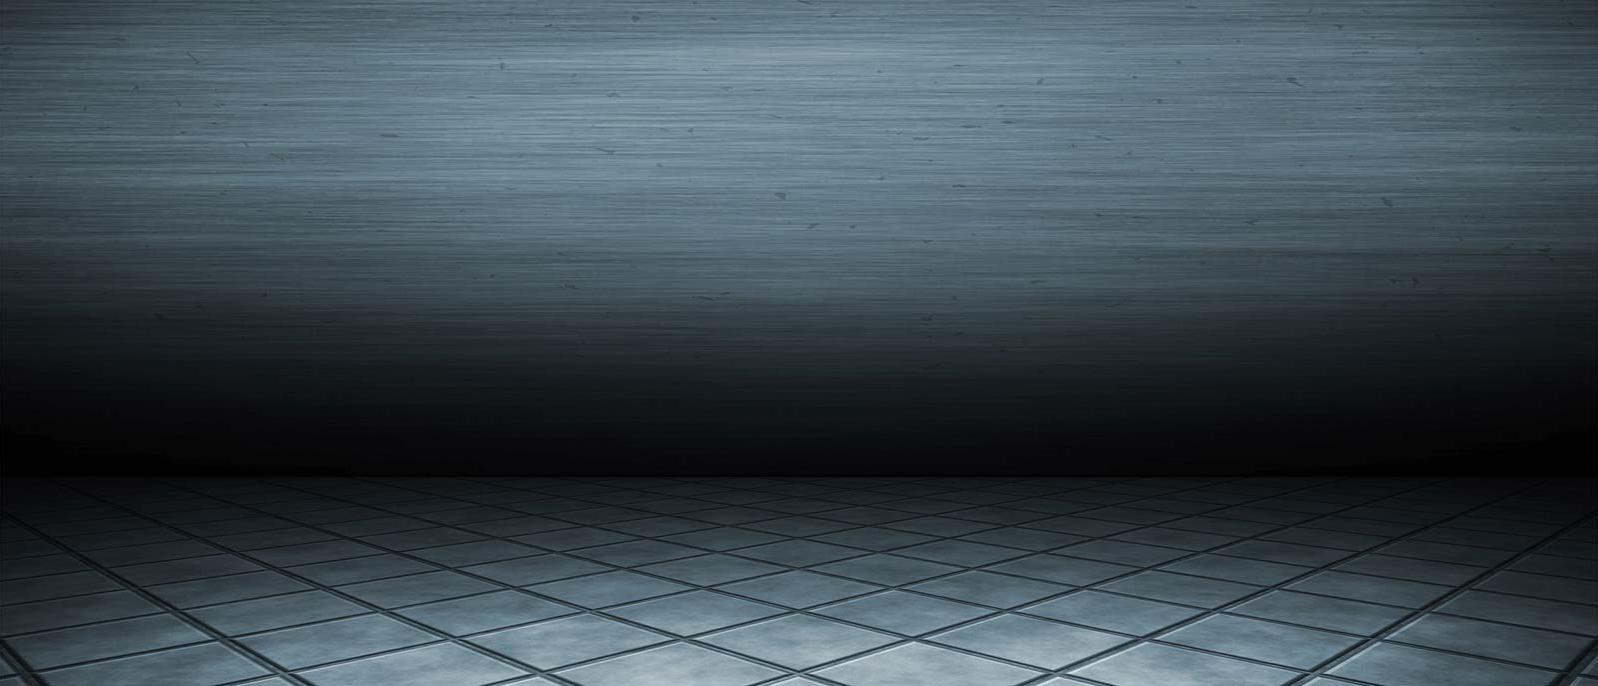 Background Image | Industrial Tile Floor Backdrop